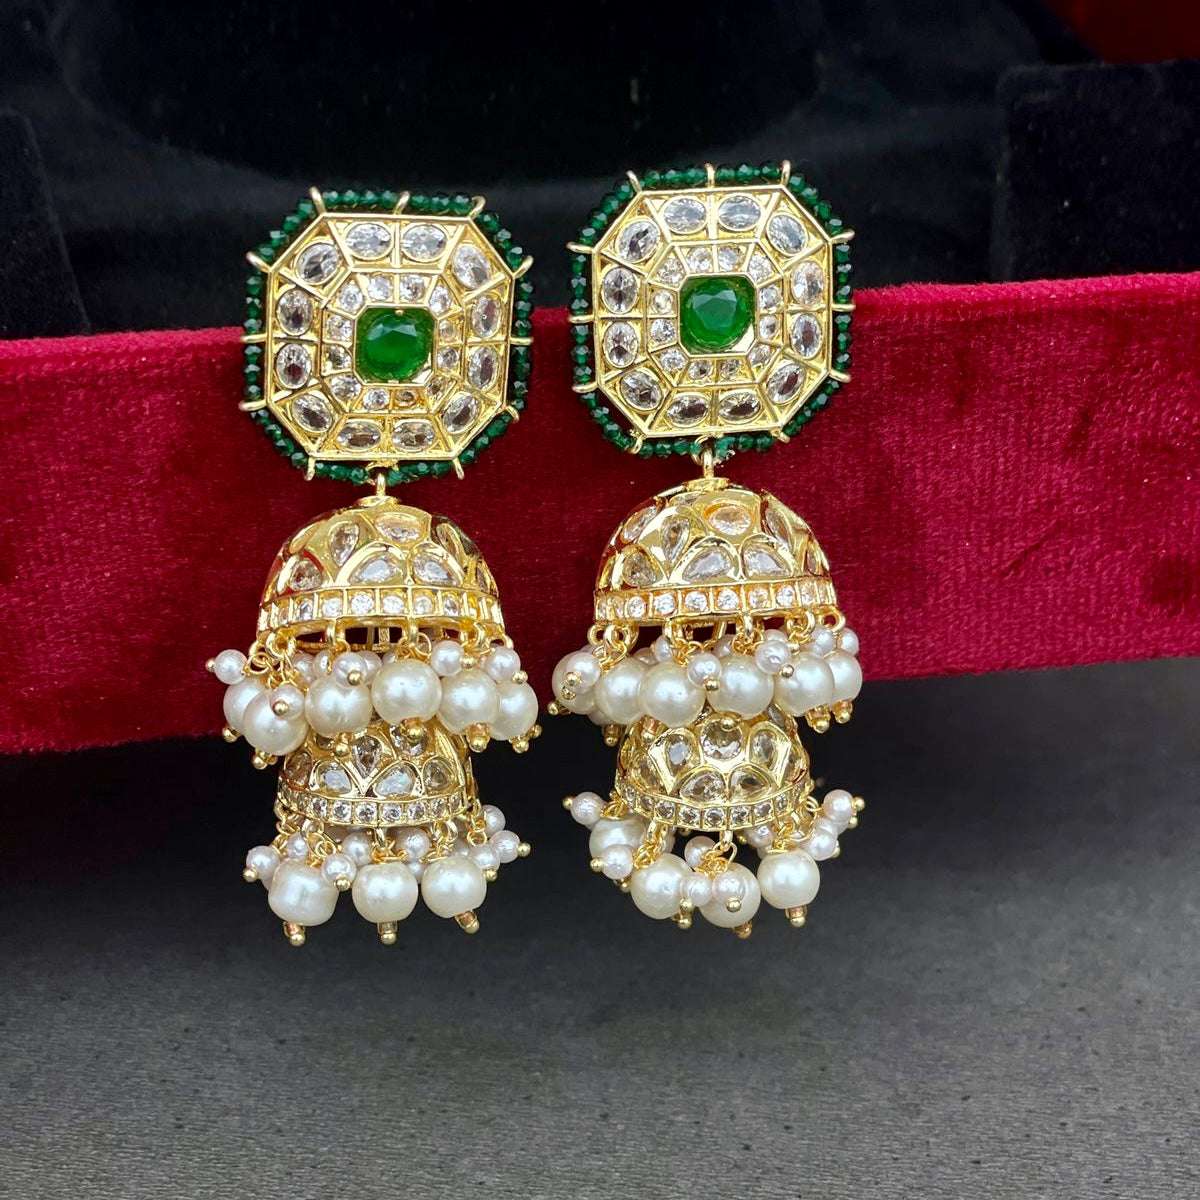 Nayaab jhansi Earrings